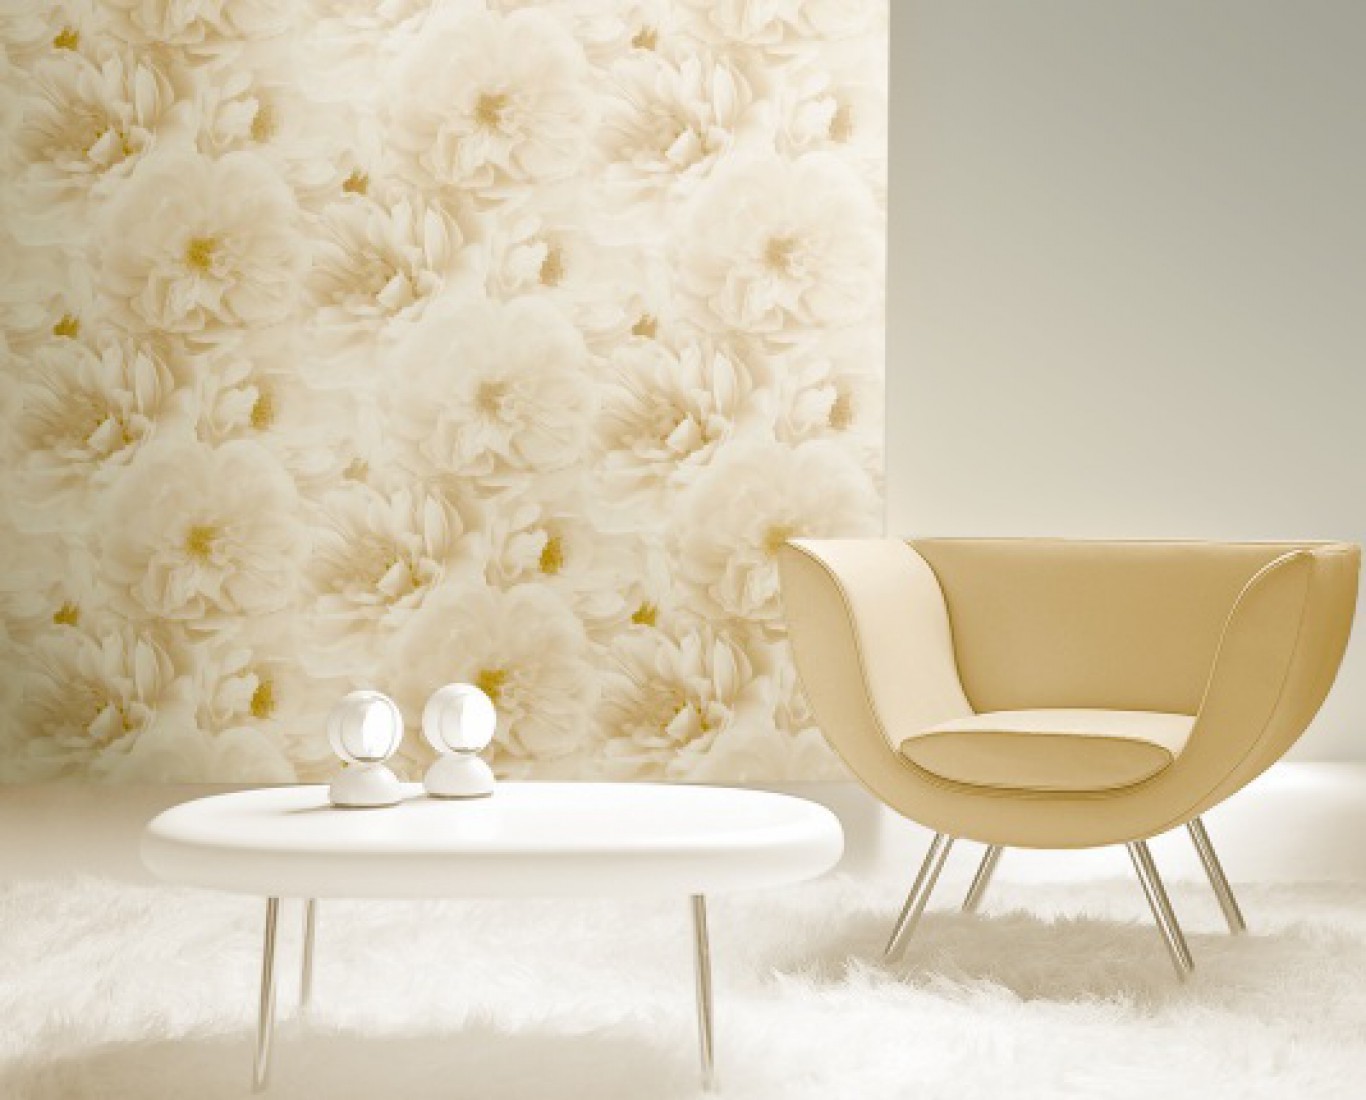 کاغذ دیواری گلدار, کاغذ دیواری گل ریز, کاغذ دیواری گل درشت, کاغذ دیواری گل دار, کاغذ دیواری اتاق خواب | wall-decor, wall-decor-blog | دکوراسیون ساختمان دکوروز